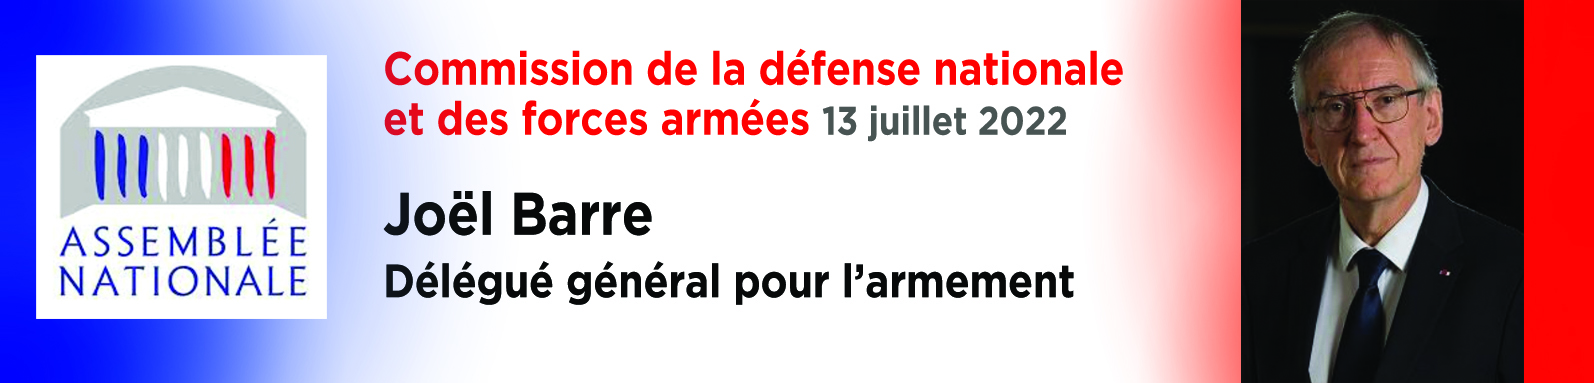 bandeau_intervention_dga-joel-barre_assemblee-nationale_juillet-2022